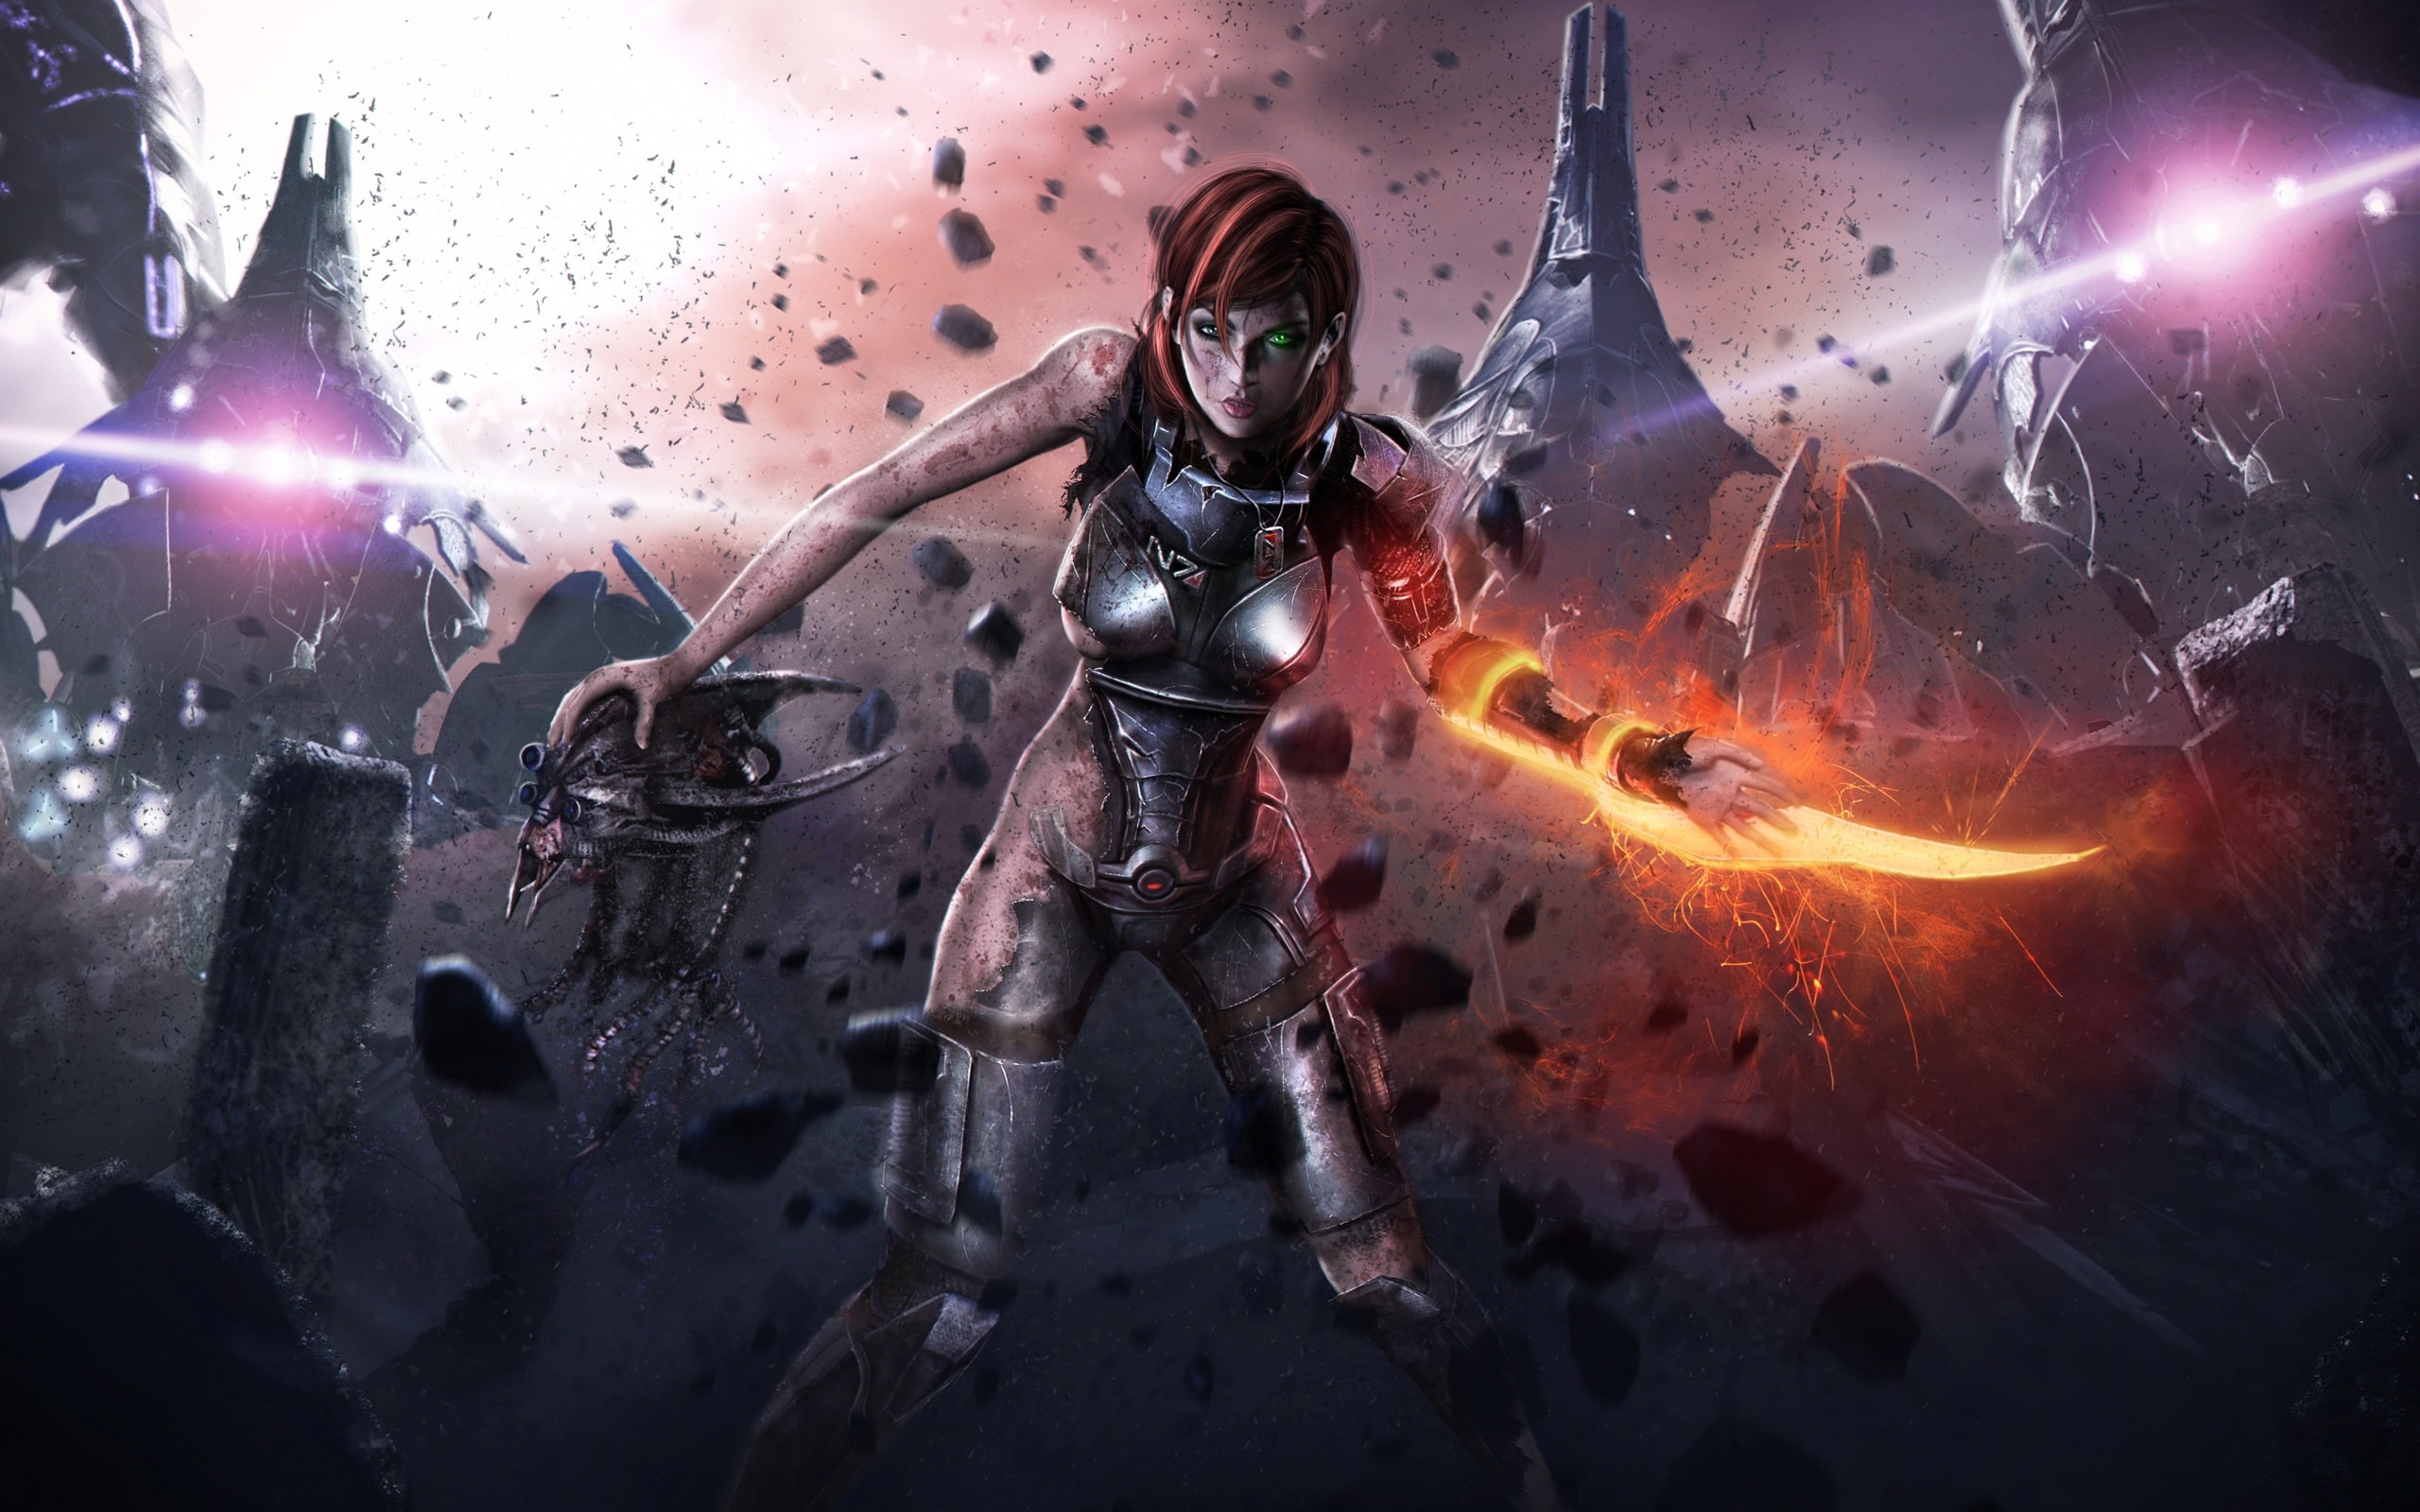 Mass Effect 3, Injured female soldier